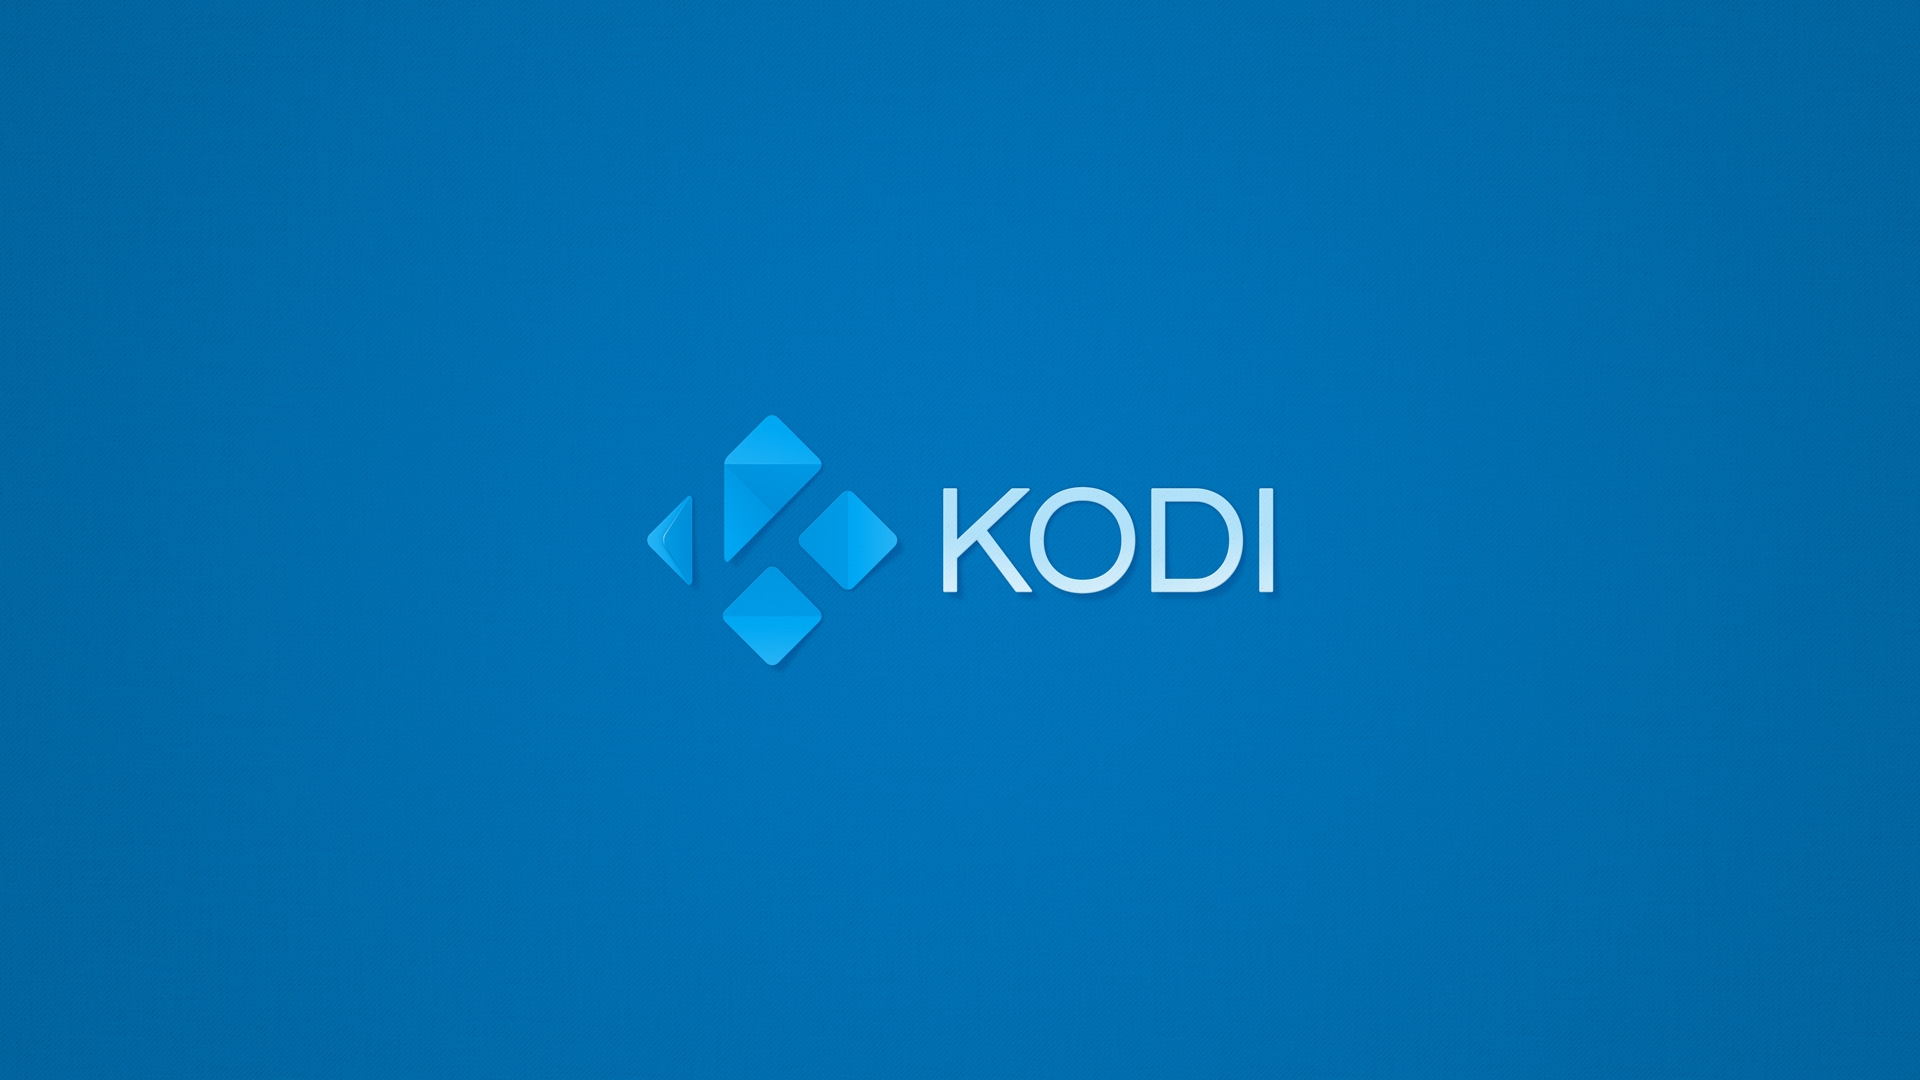 Kodi-Wallpaper-17C-1080p samfisher.jpg